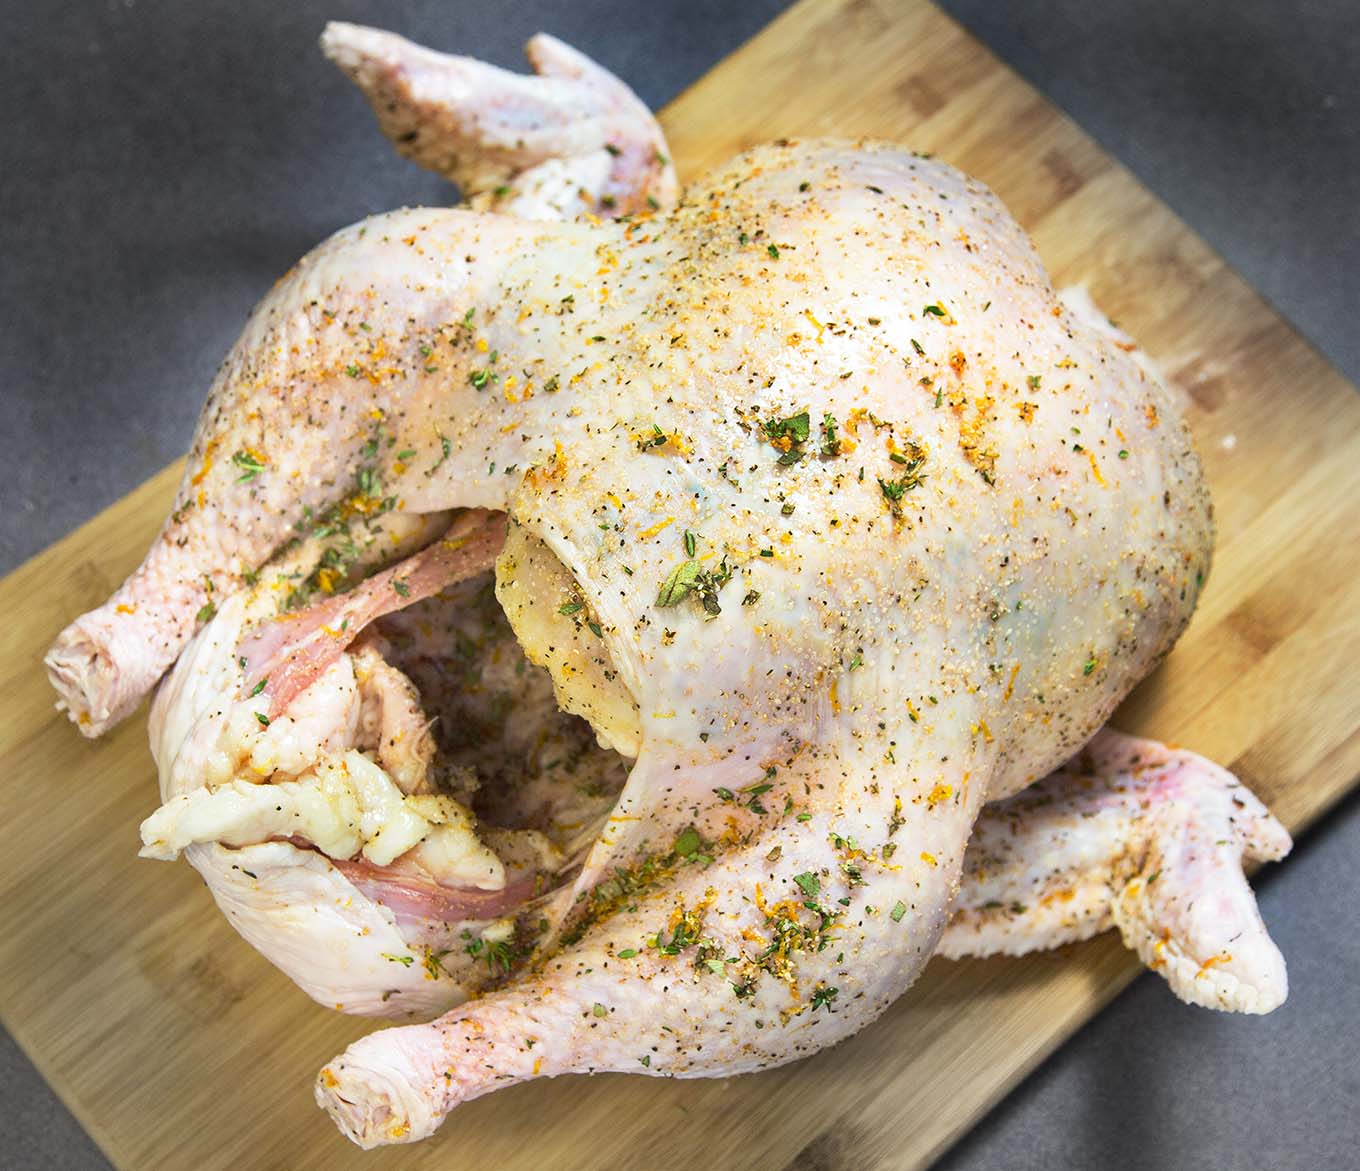 raw turkey on a cutting board seasoned with dry brine